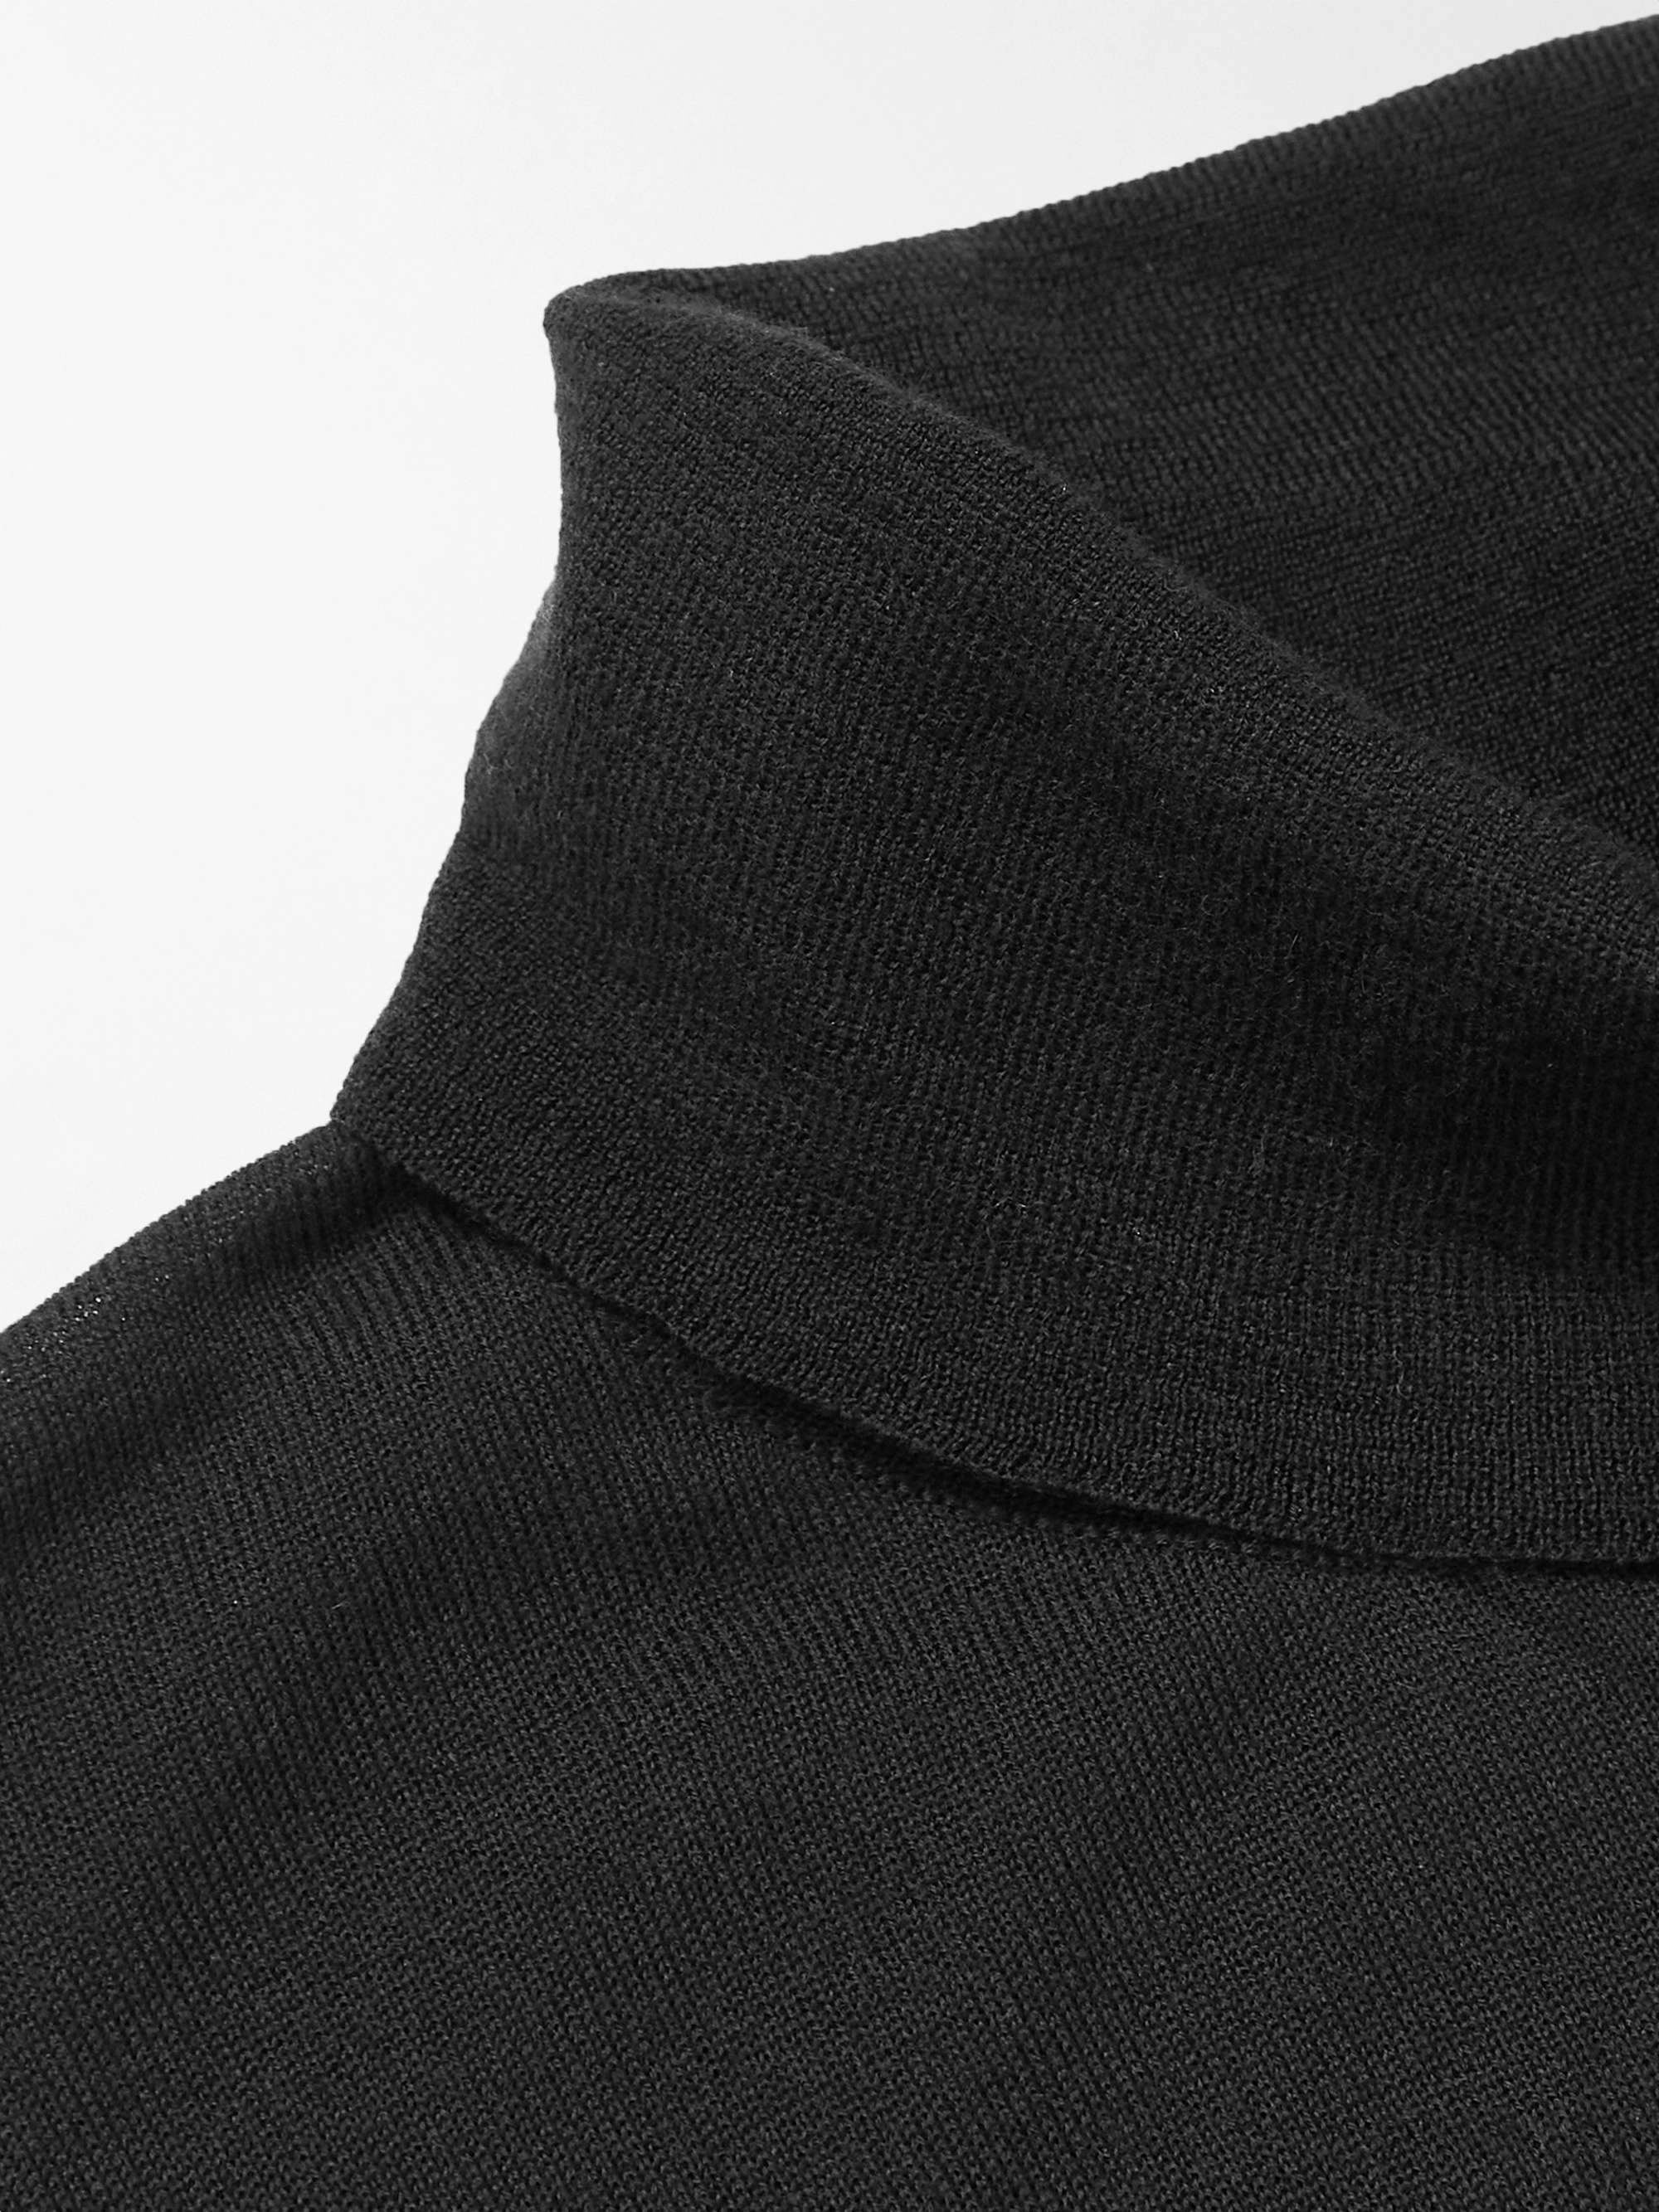 KINGSMAN Cashmere Rollneck Sweater for Men | MR PORTER